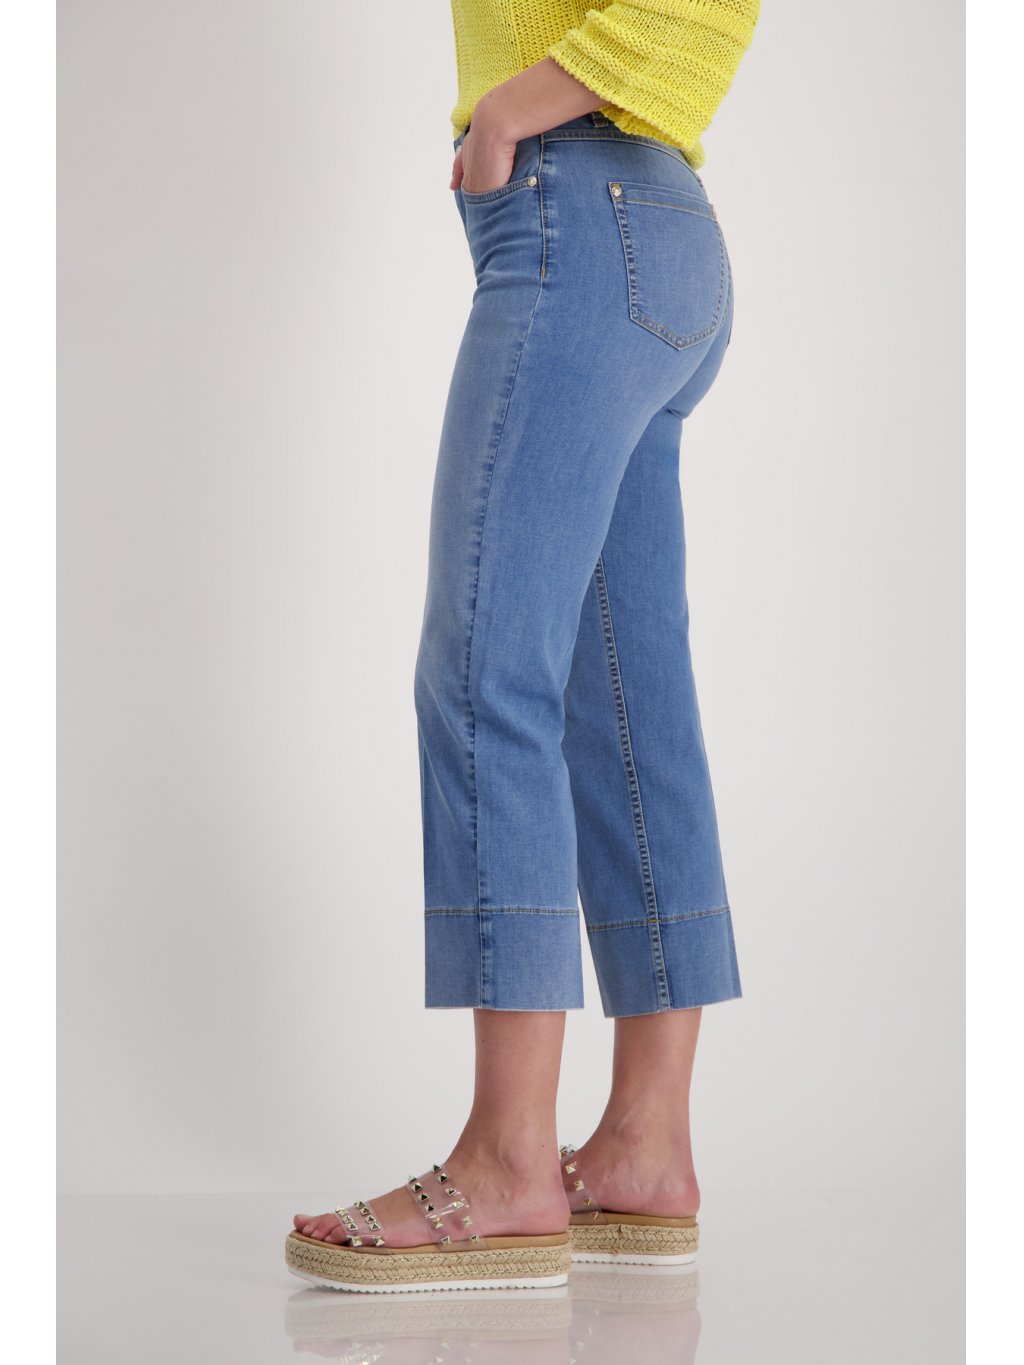 Kalhoty Monari 8343 středné modré džíny zkrácené